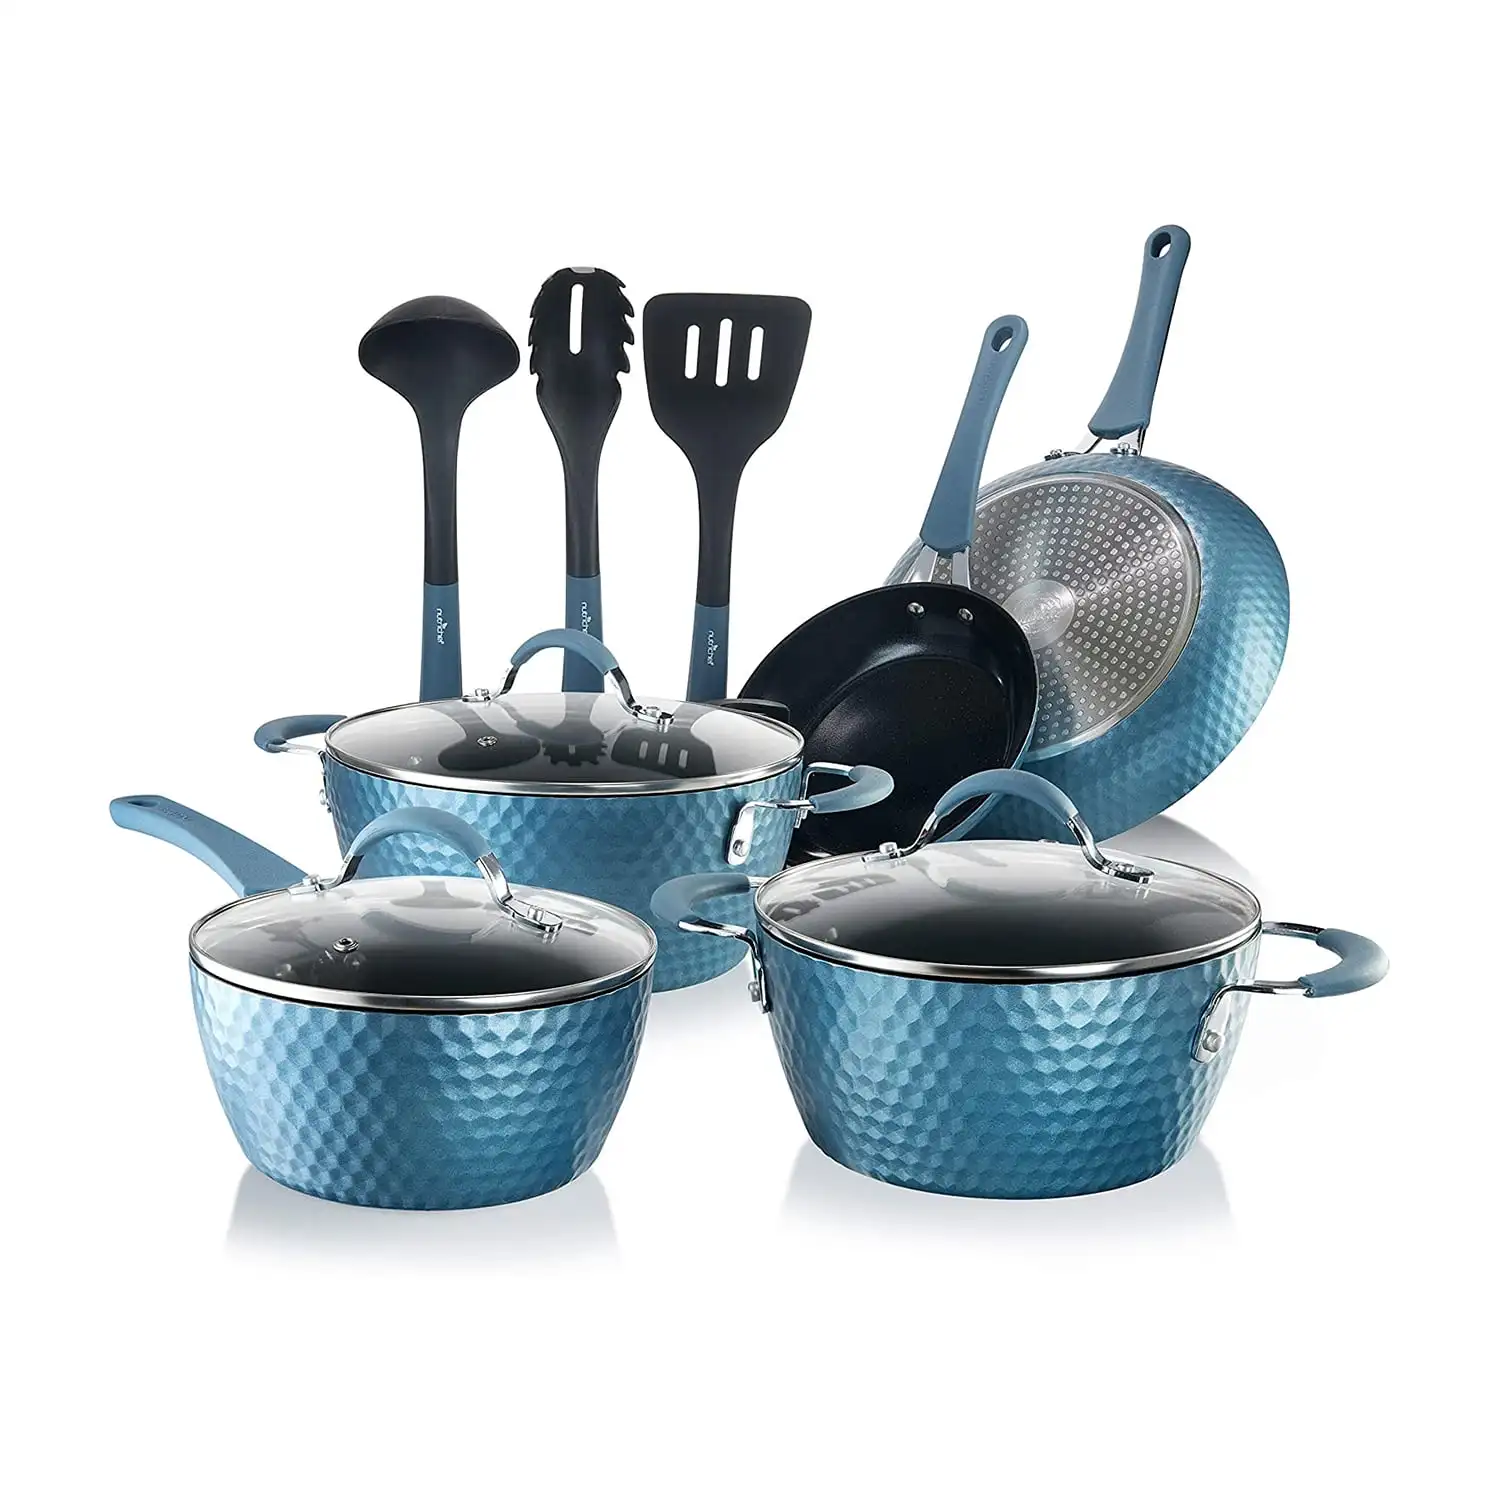 https://ae01.alicdn.com/kf/S1eae24c89ecd46e9949250495d55f915k/11-Piece-Nonstick-Cookware-Set-Aluminum-with-Saucepan-Pot-Dutch-Oven-Frying-Pan-Lids-Kitchen.jpg